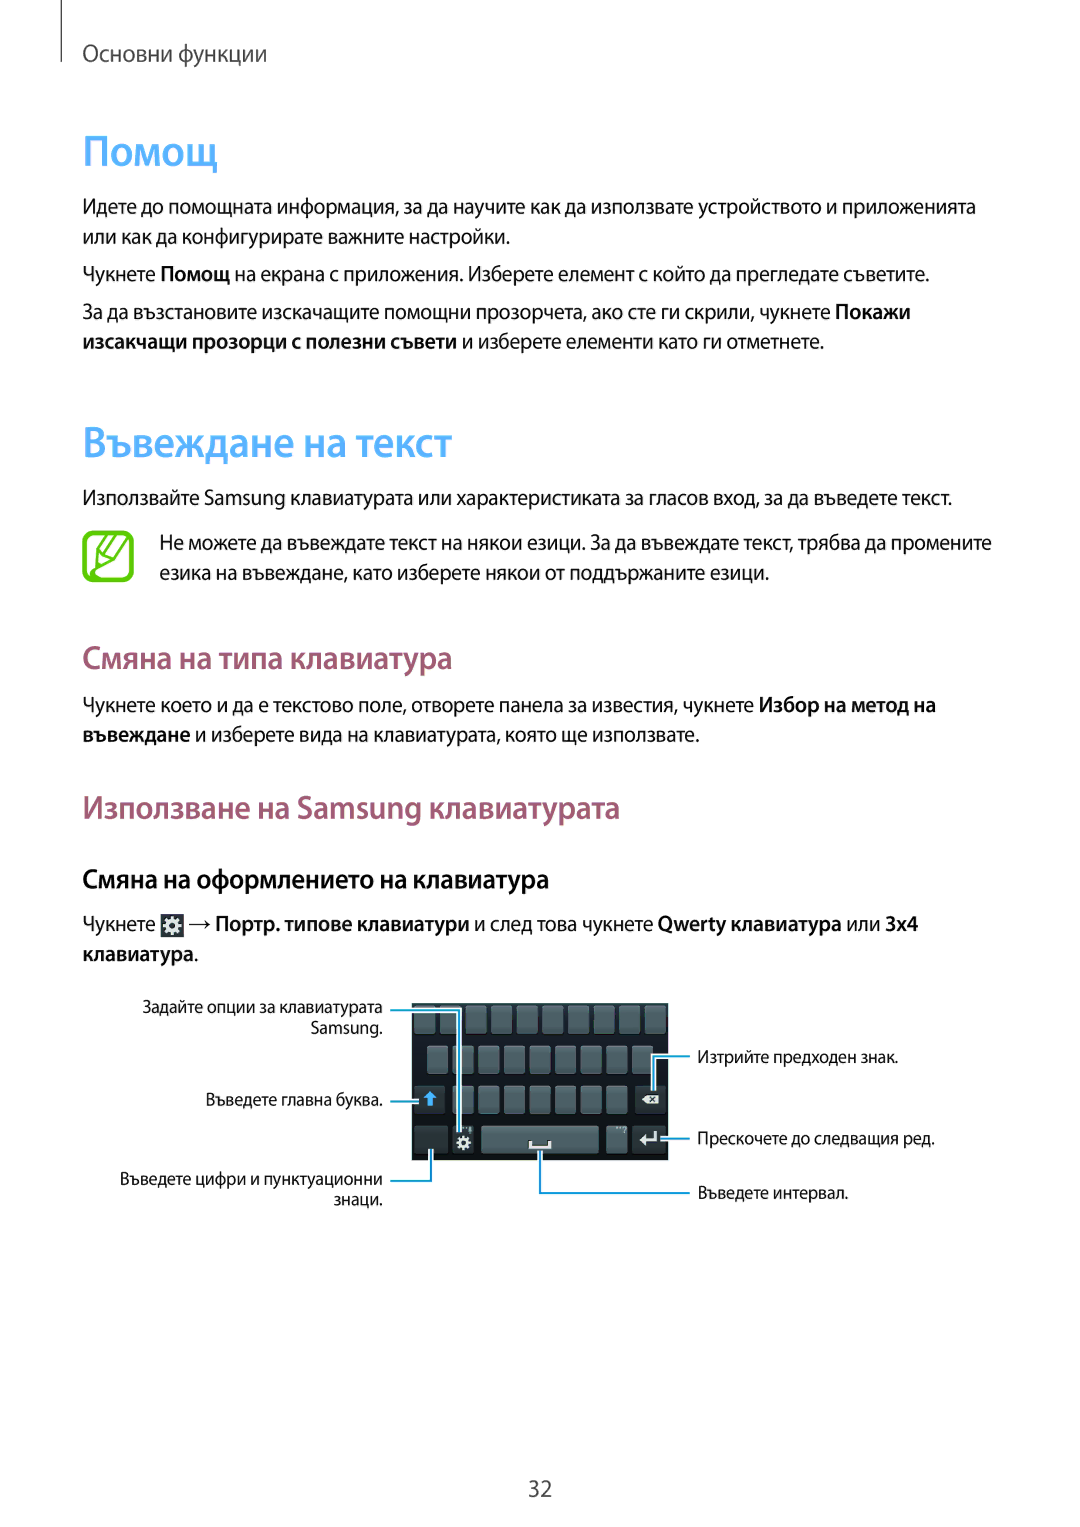 Samsung GT-S7710KRABGL manual Помощ, Въвеждане на текст, Смяна на типа клавиатура, Използване на Samsung клавиатурата 